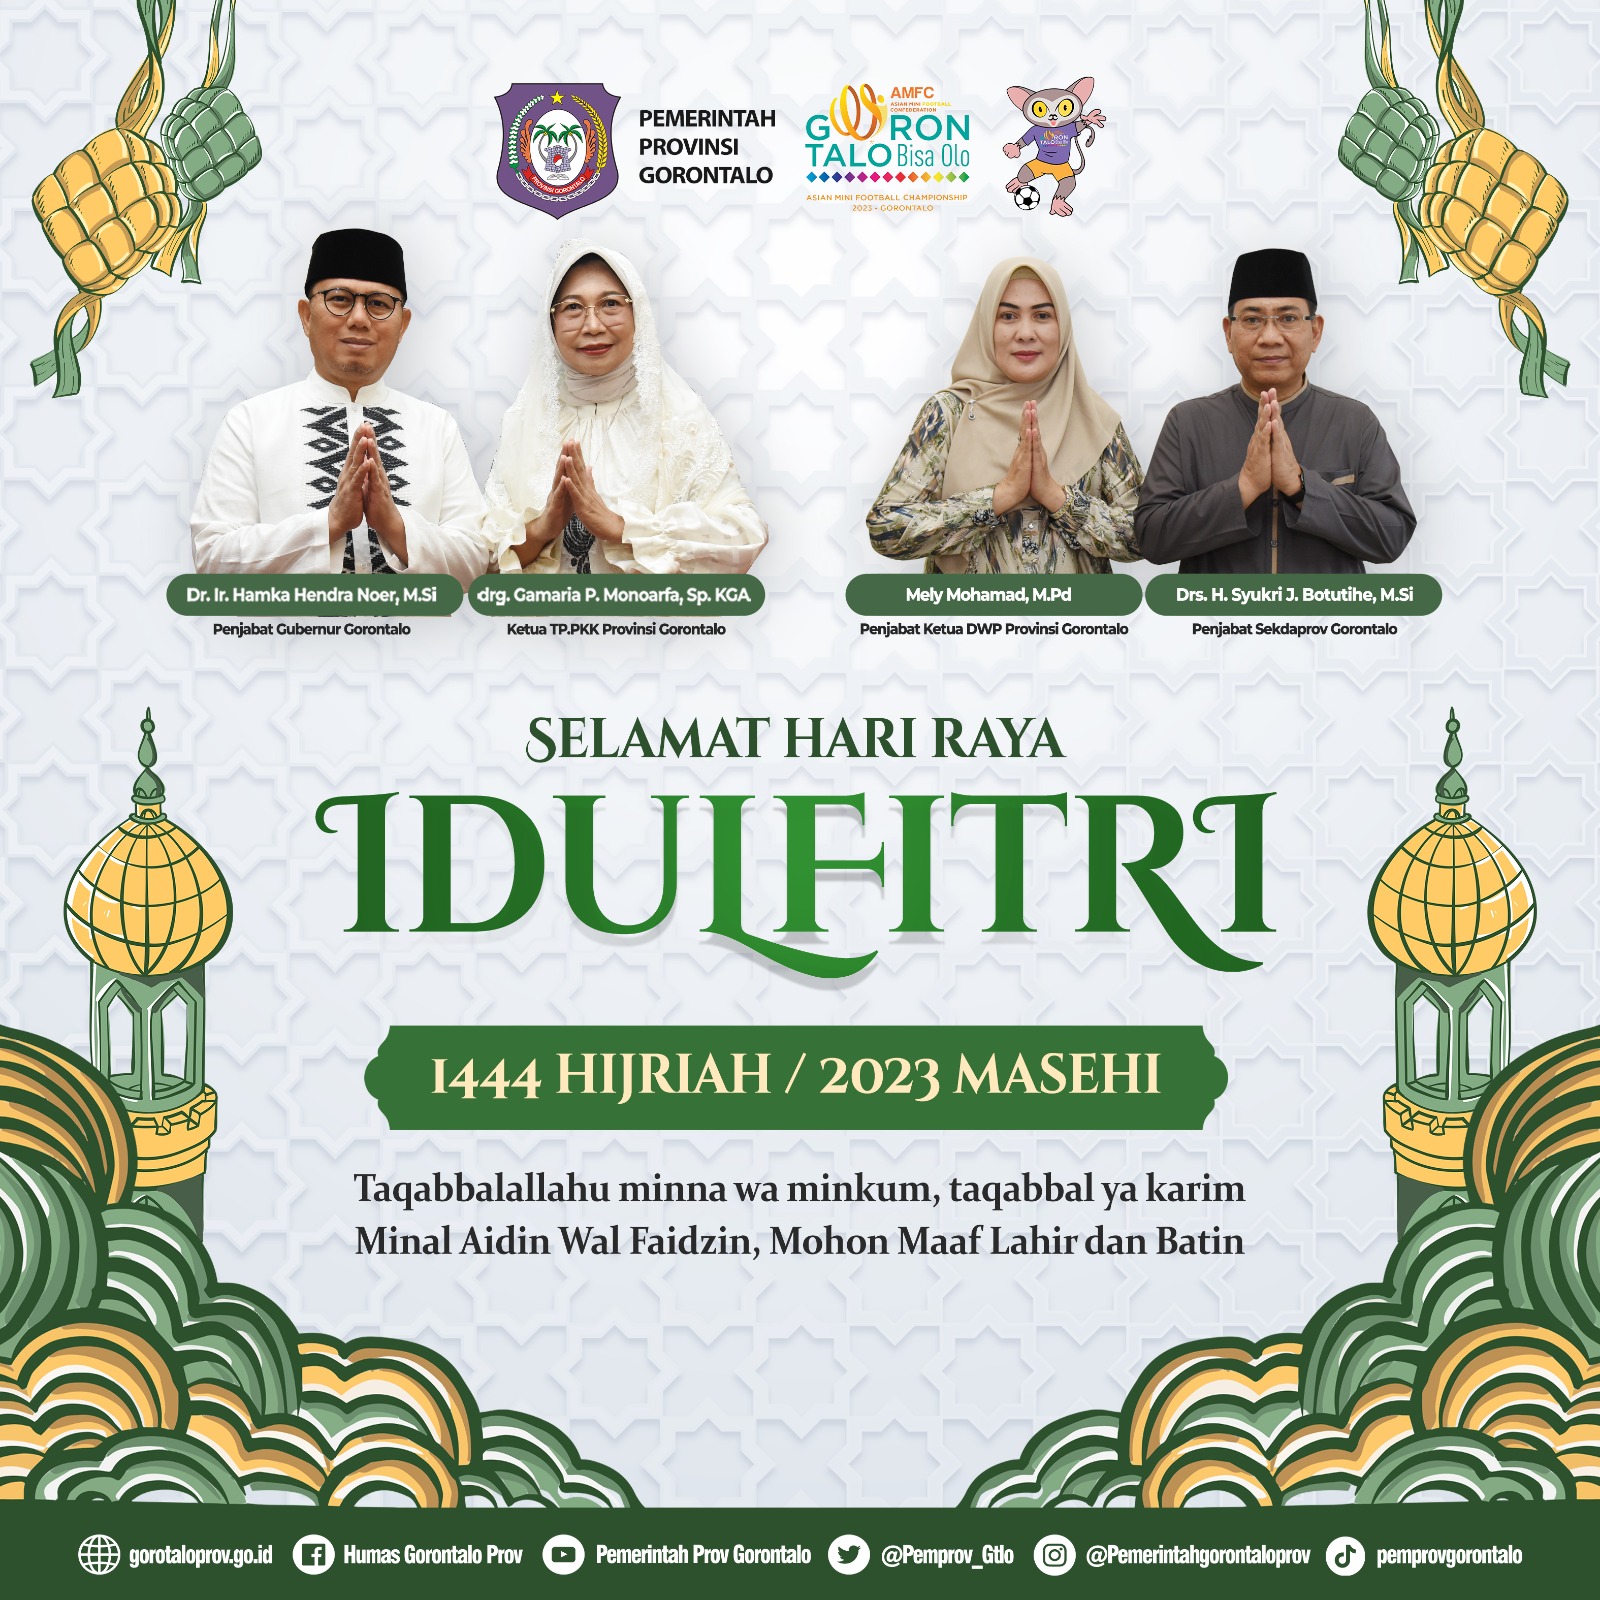 Pemerintah Provinsi Gorontalo mengucapkan Selamat Hari Raya Idul Fitri 1444 Hijriah